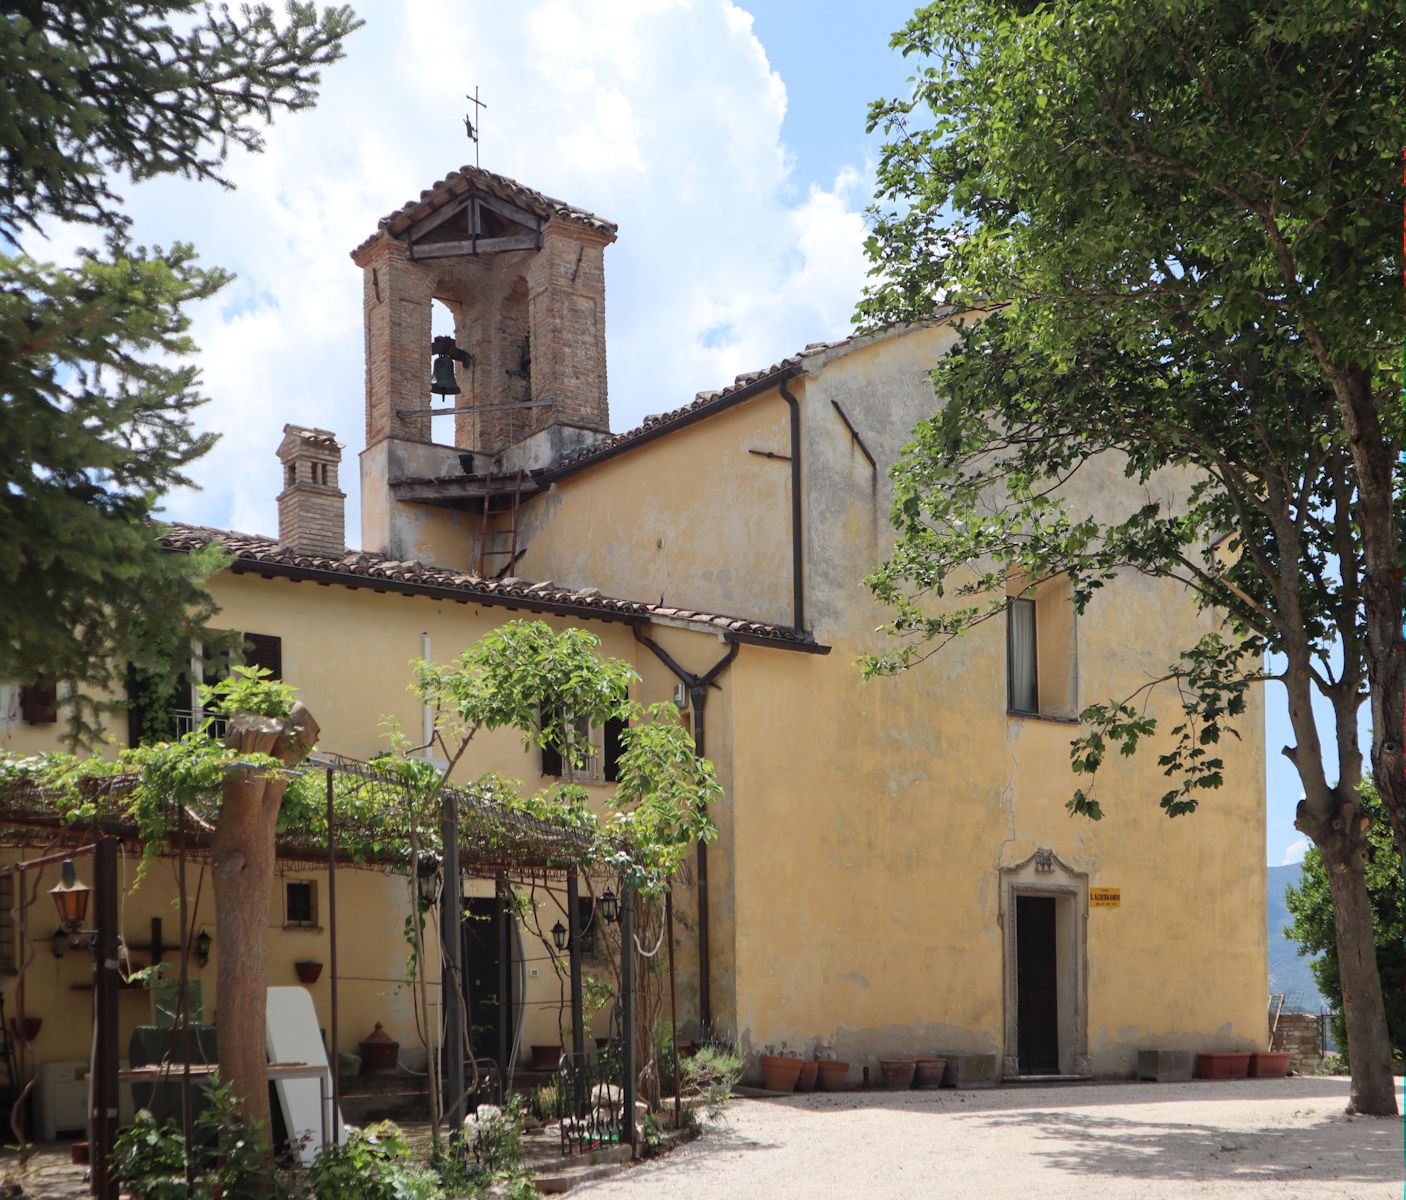 die von Aldebrand erbaute ehemalige Kathedrale von Fossombrone, heute die Kirche Sant'Aldebrando